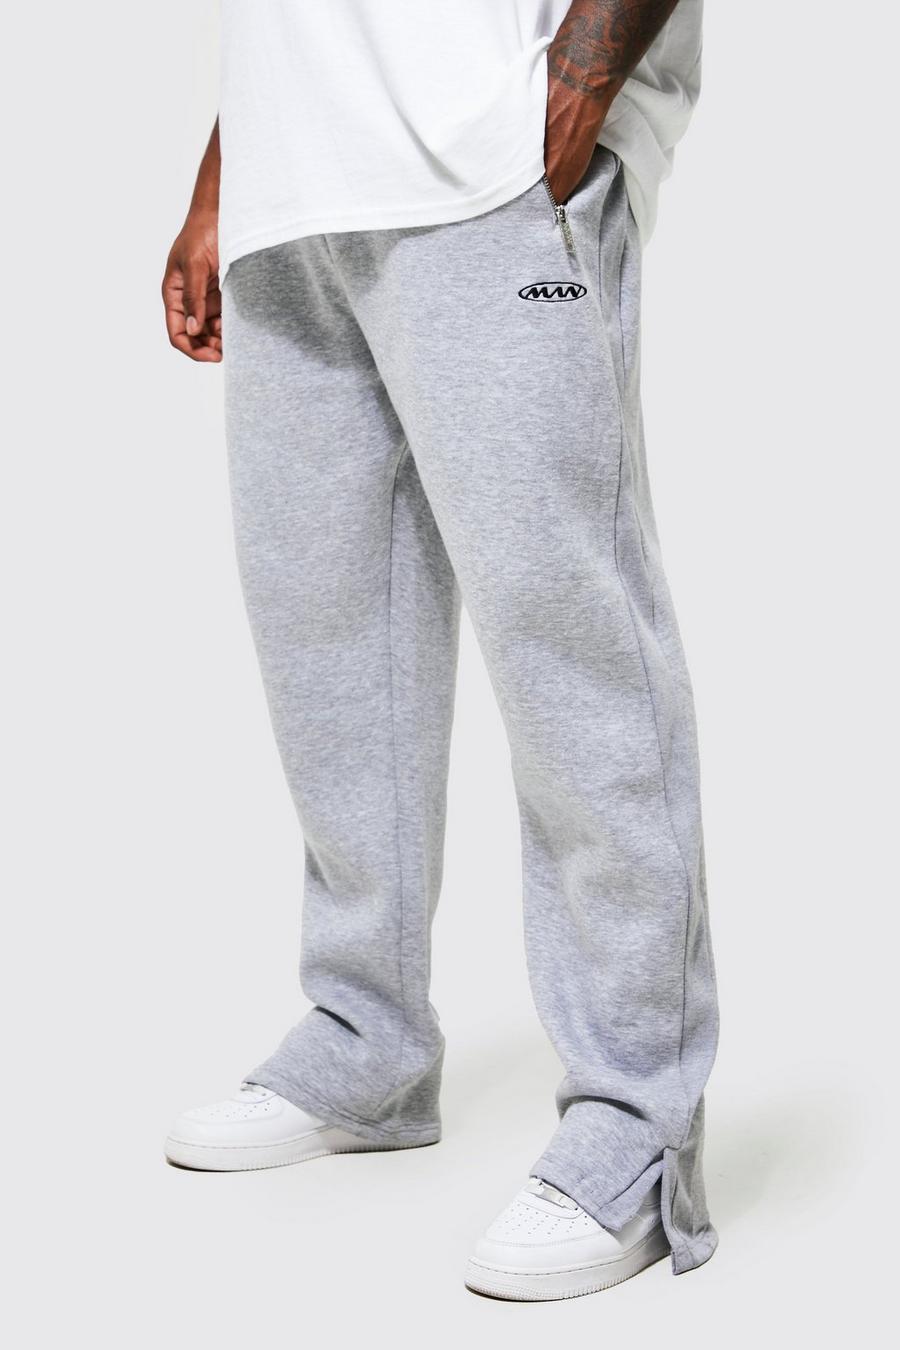 Pantaloni tuta Plus Size Man con nervature e spacco, Grey marl grigio